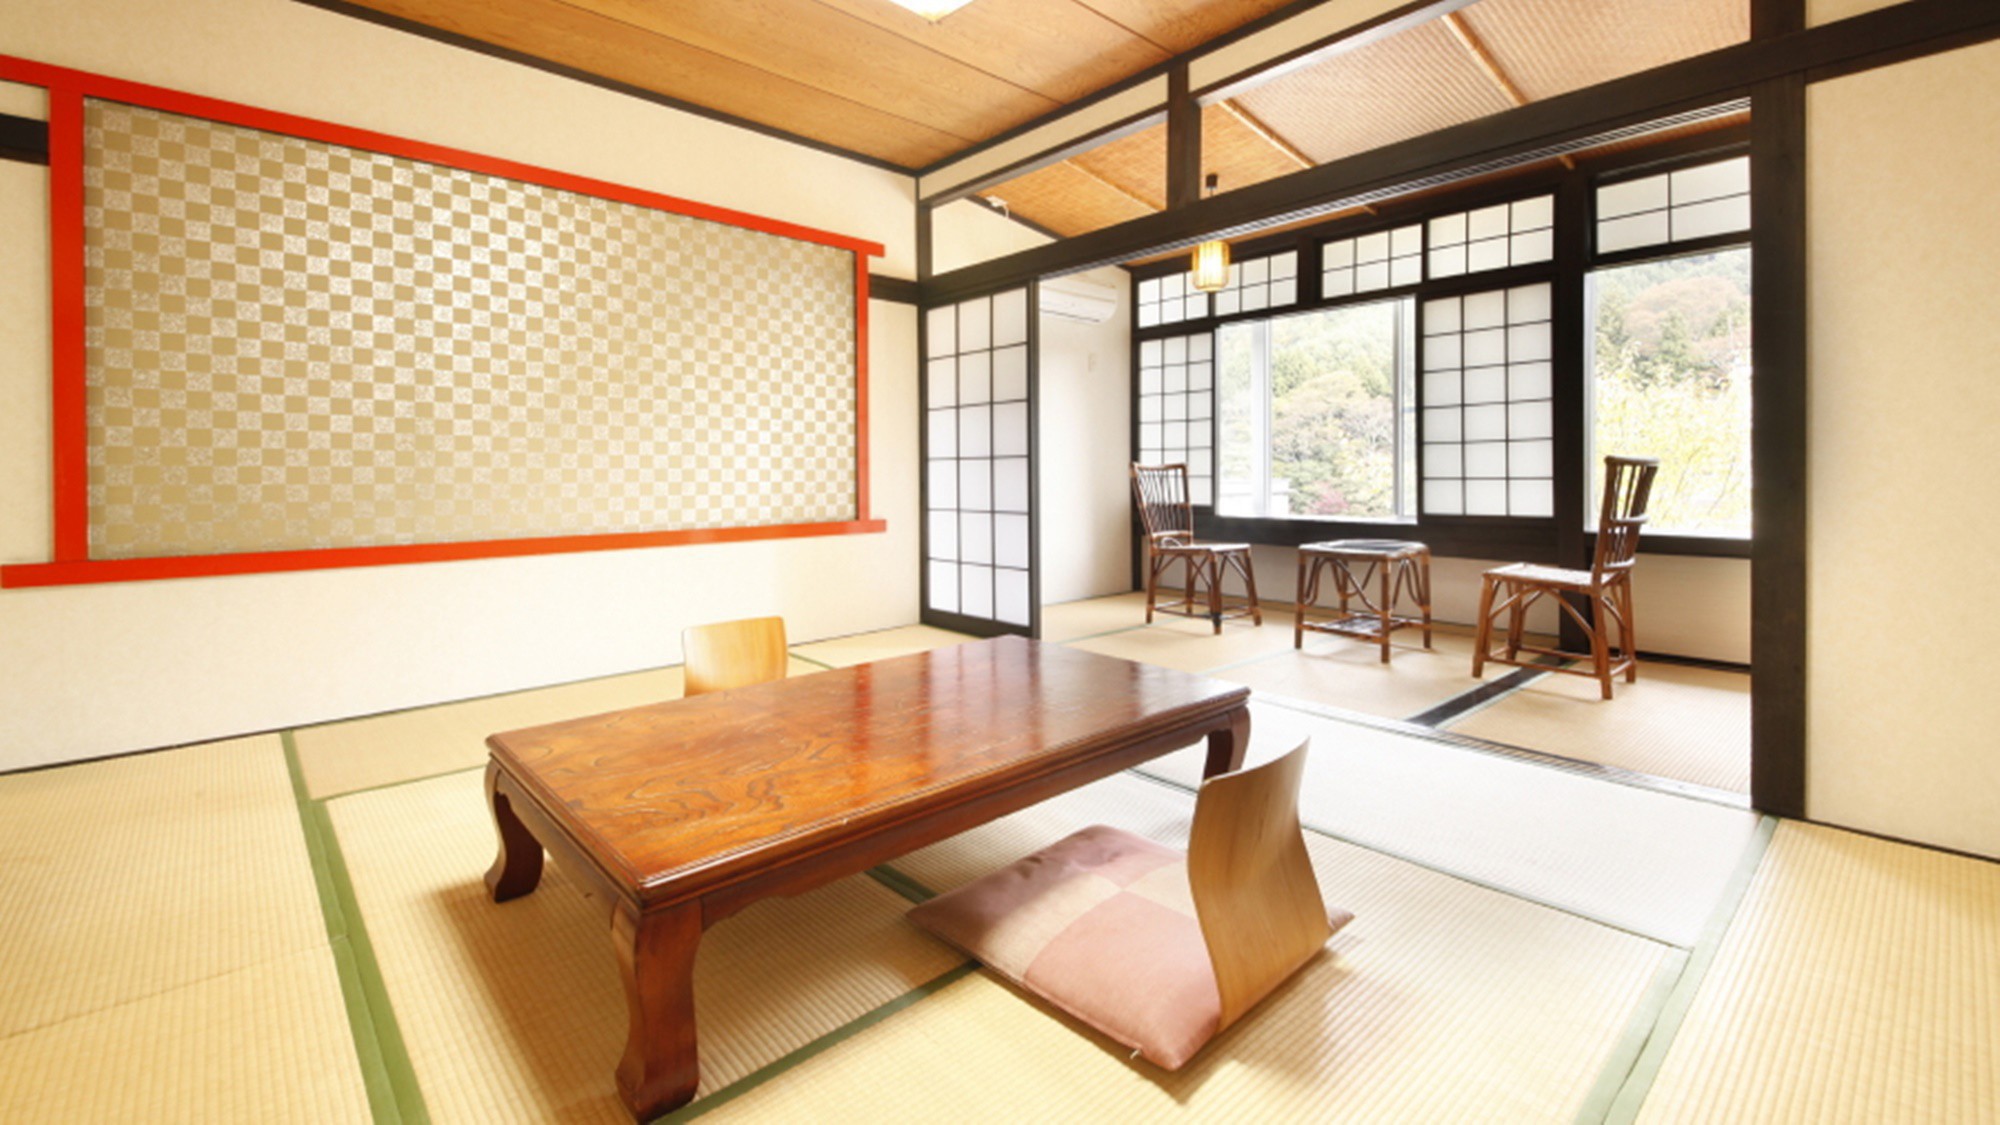 【モダン和室】品のある大人な空間をお楽しみいただける和室のお部屋です。